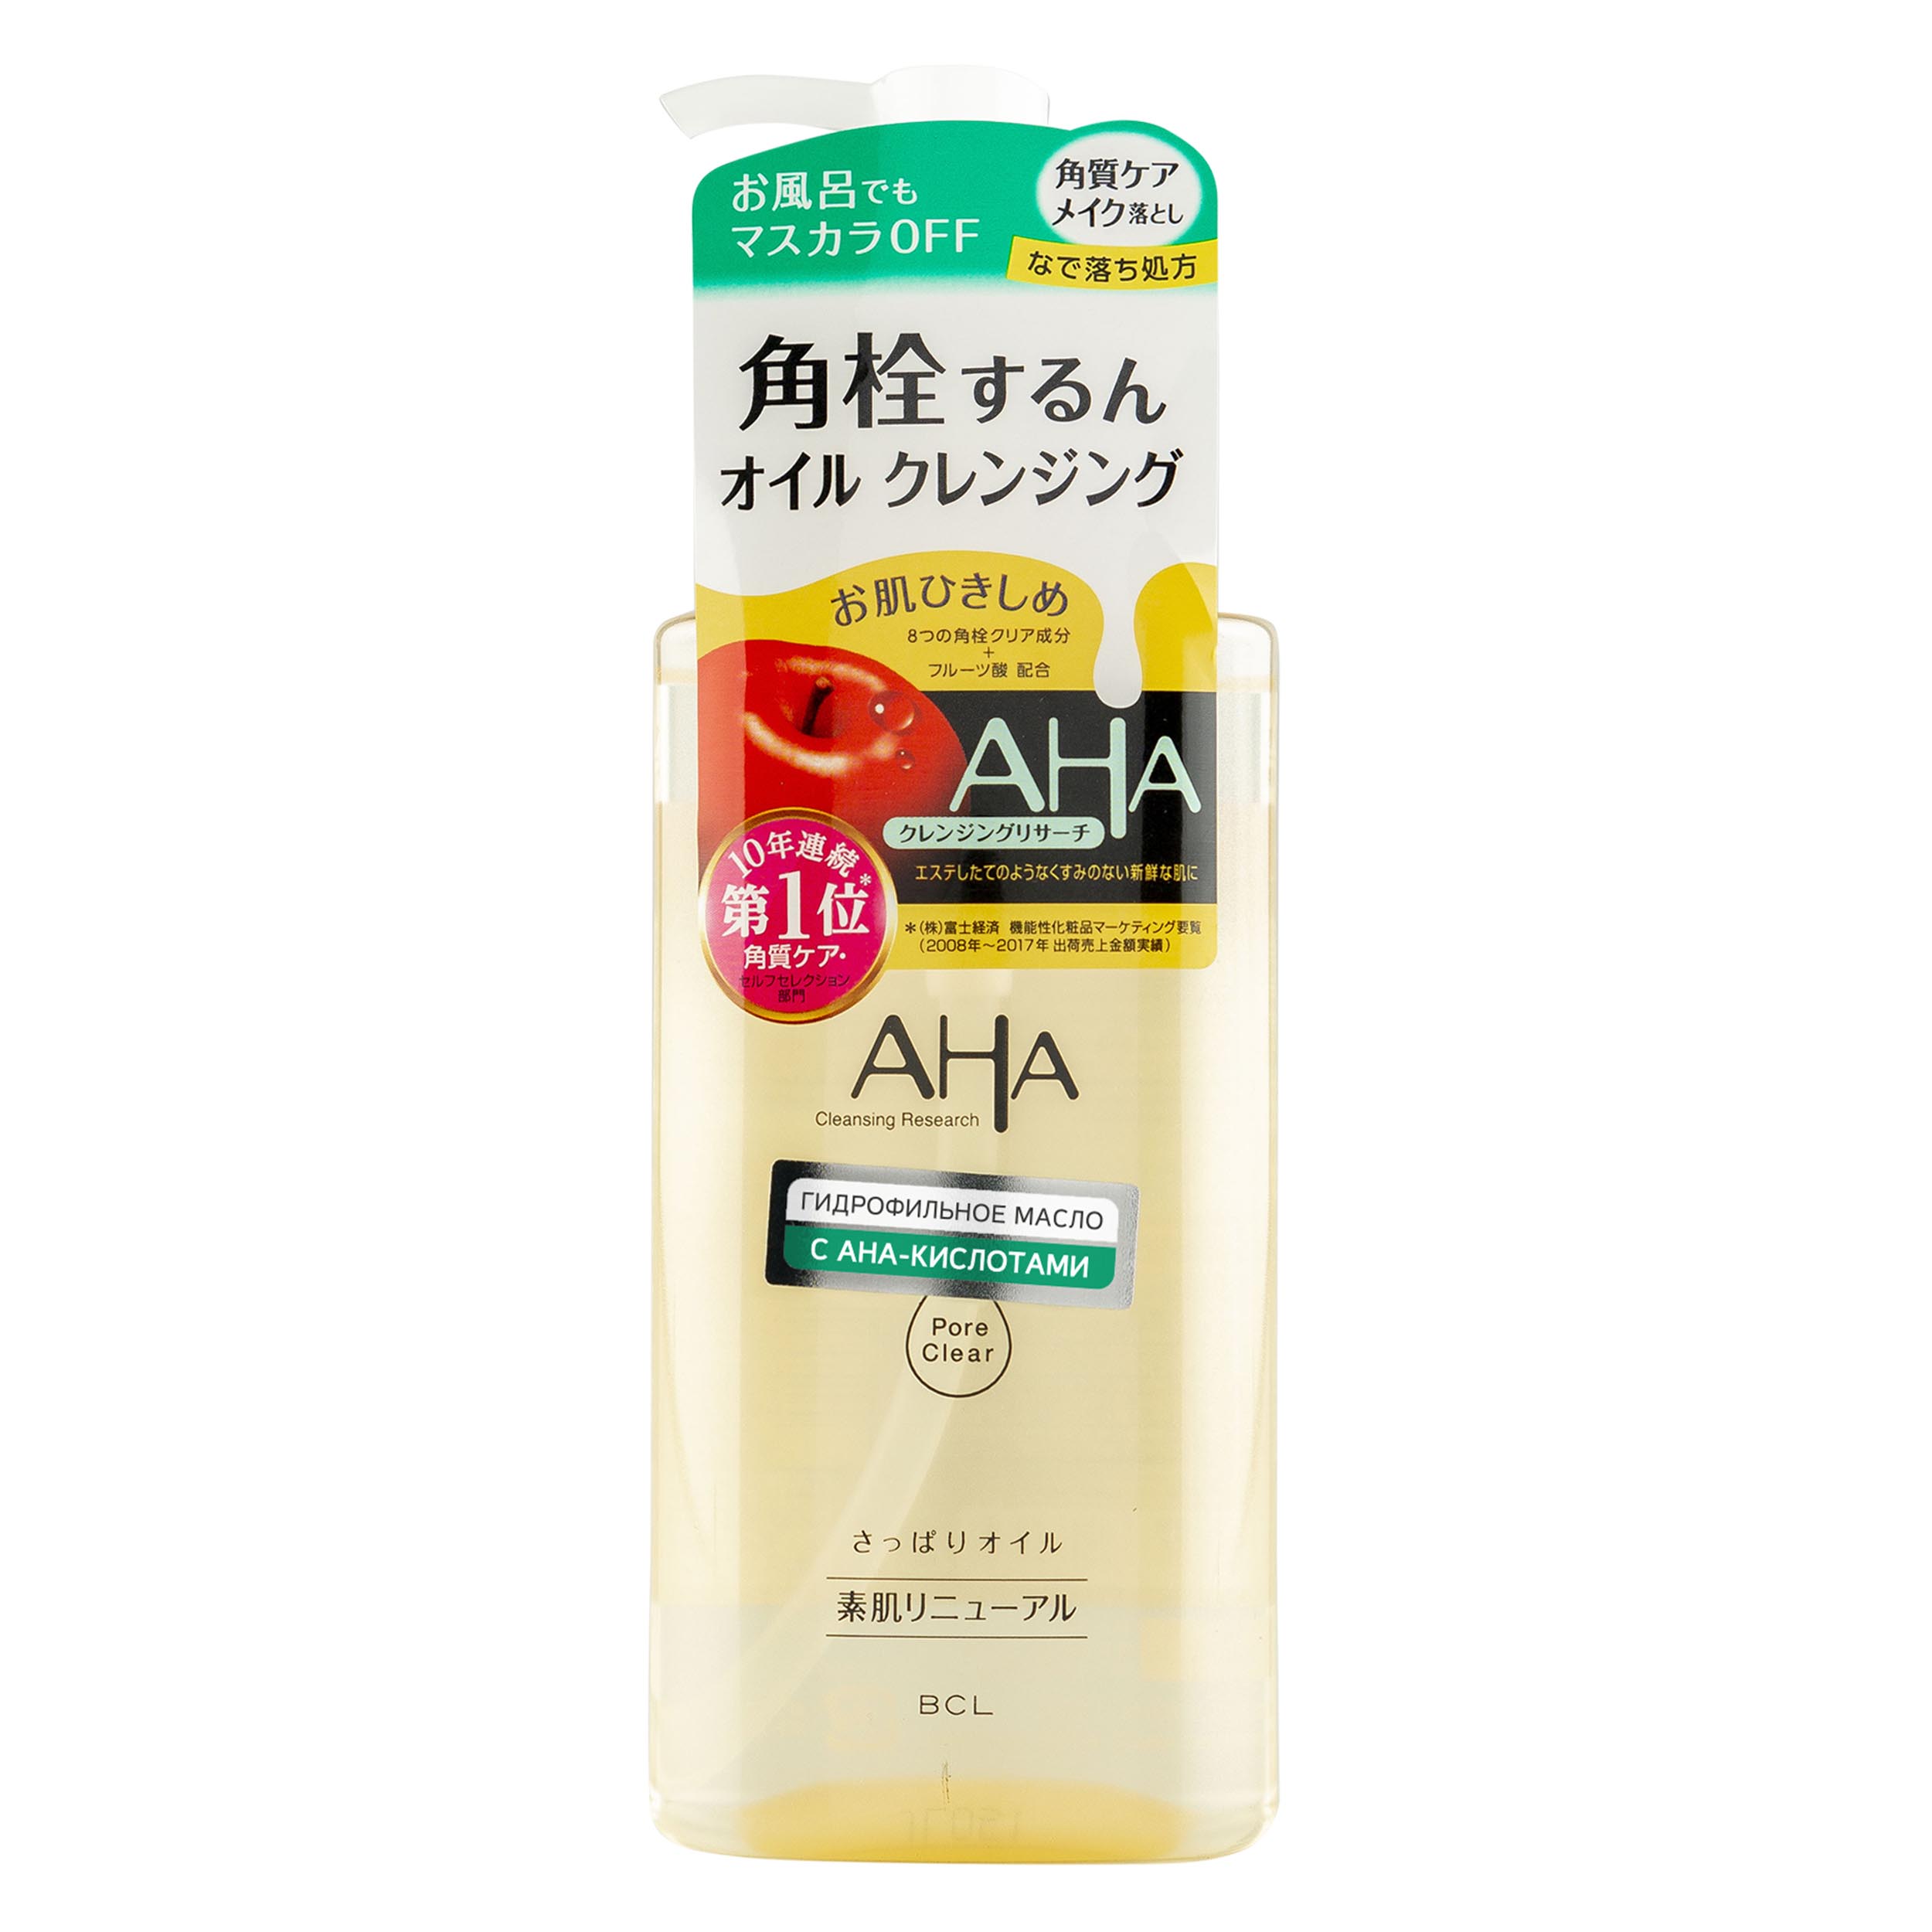 Купить Aha Гидрофильное масло для снятия макияжа с фруктовыми кислотами для нормальной и комбинированной кожи, 200 мл (Aha, Basic), Япония